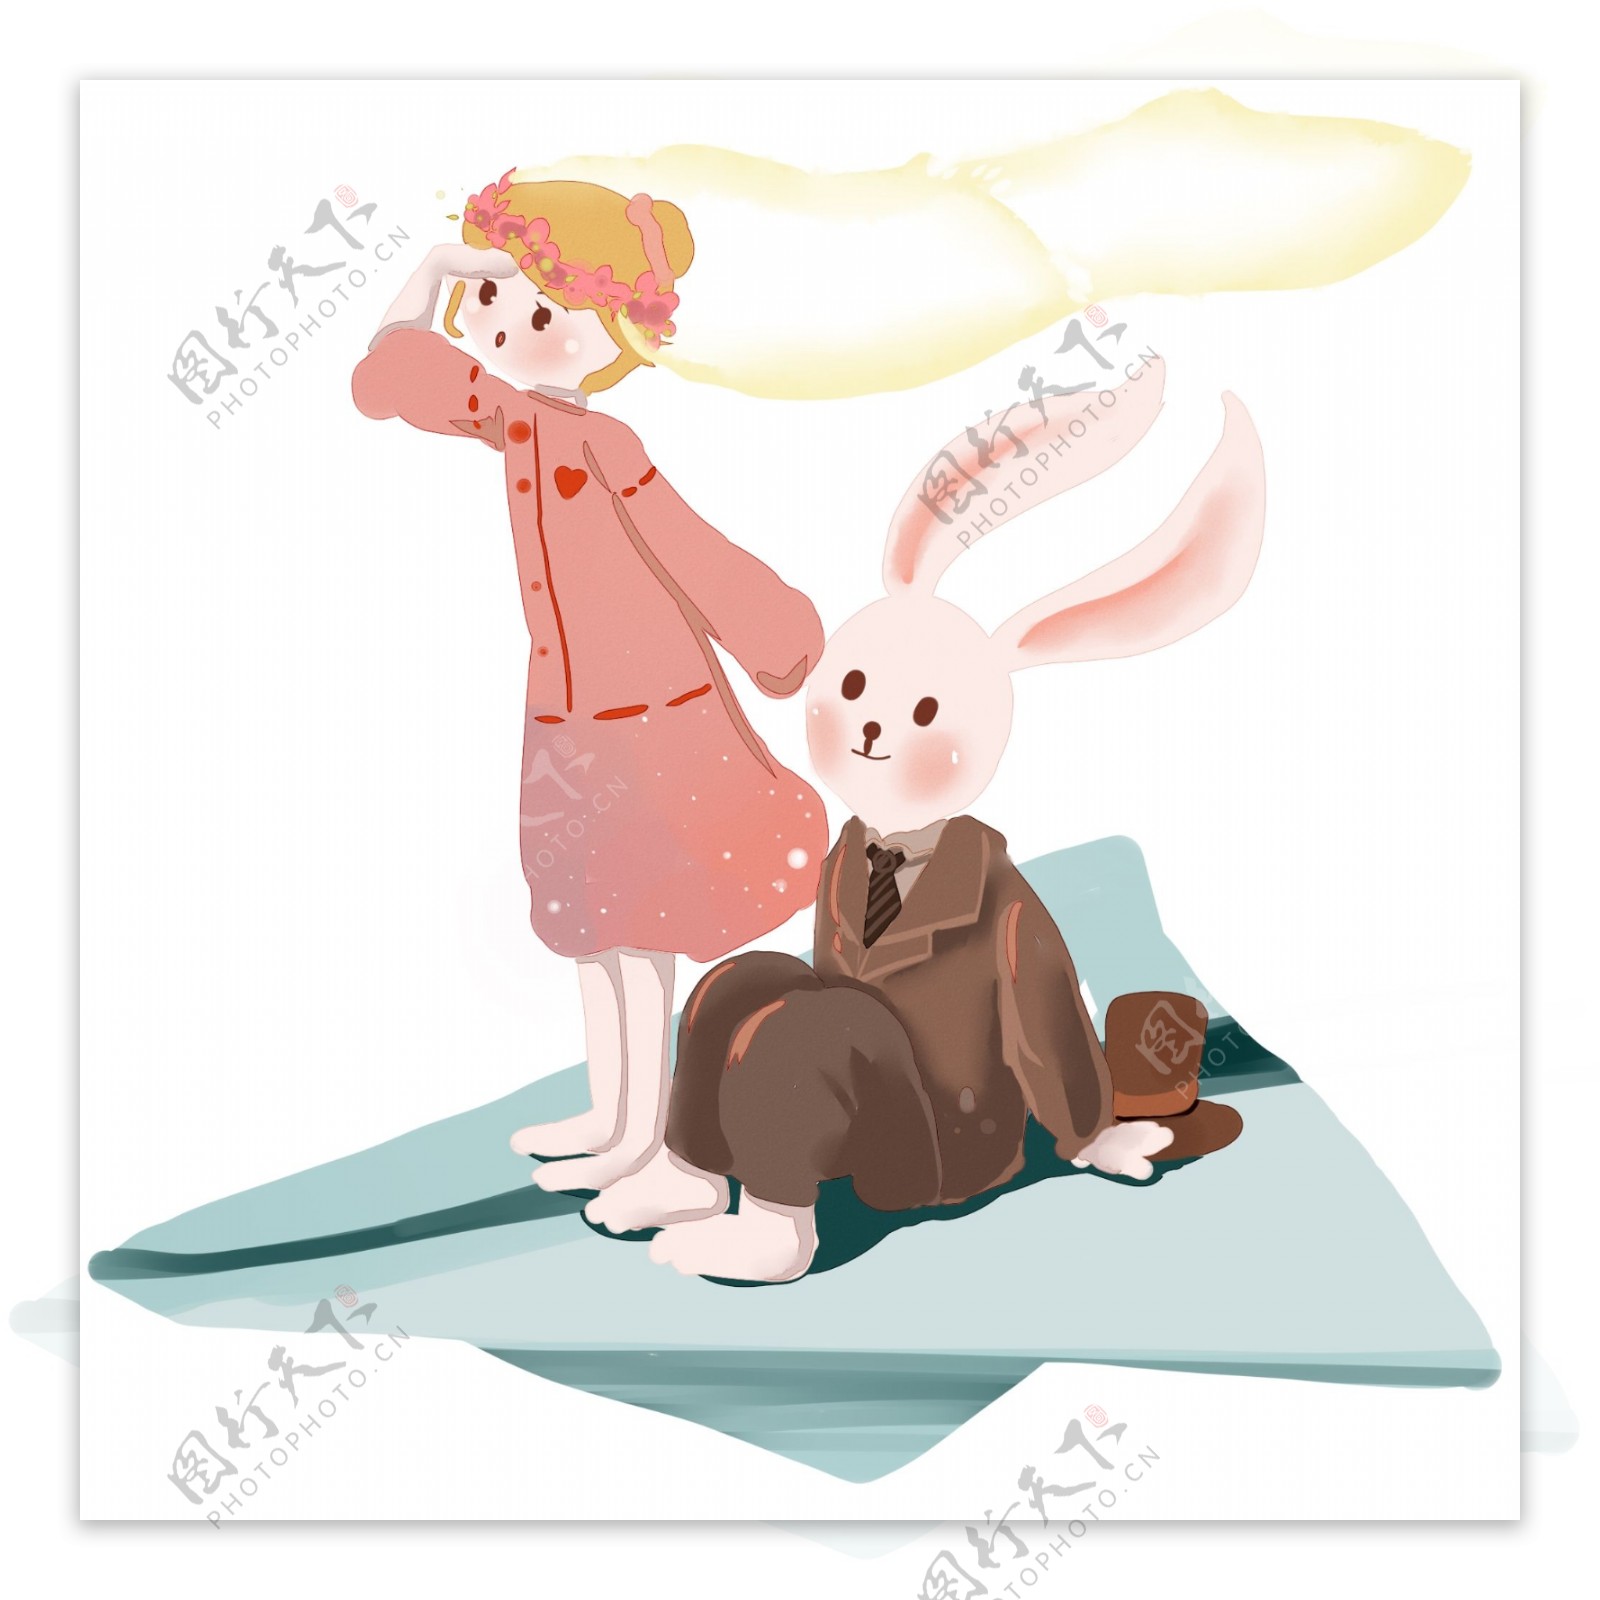 坐着纸飞机去旅行的兔子先生和粉色女孩儿之梦幻系列三